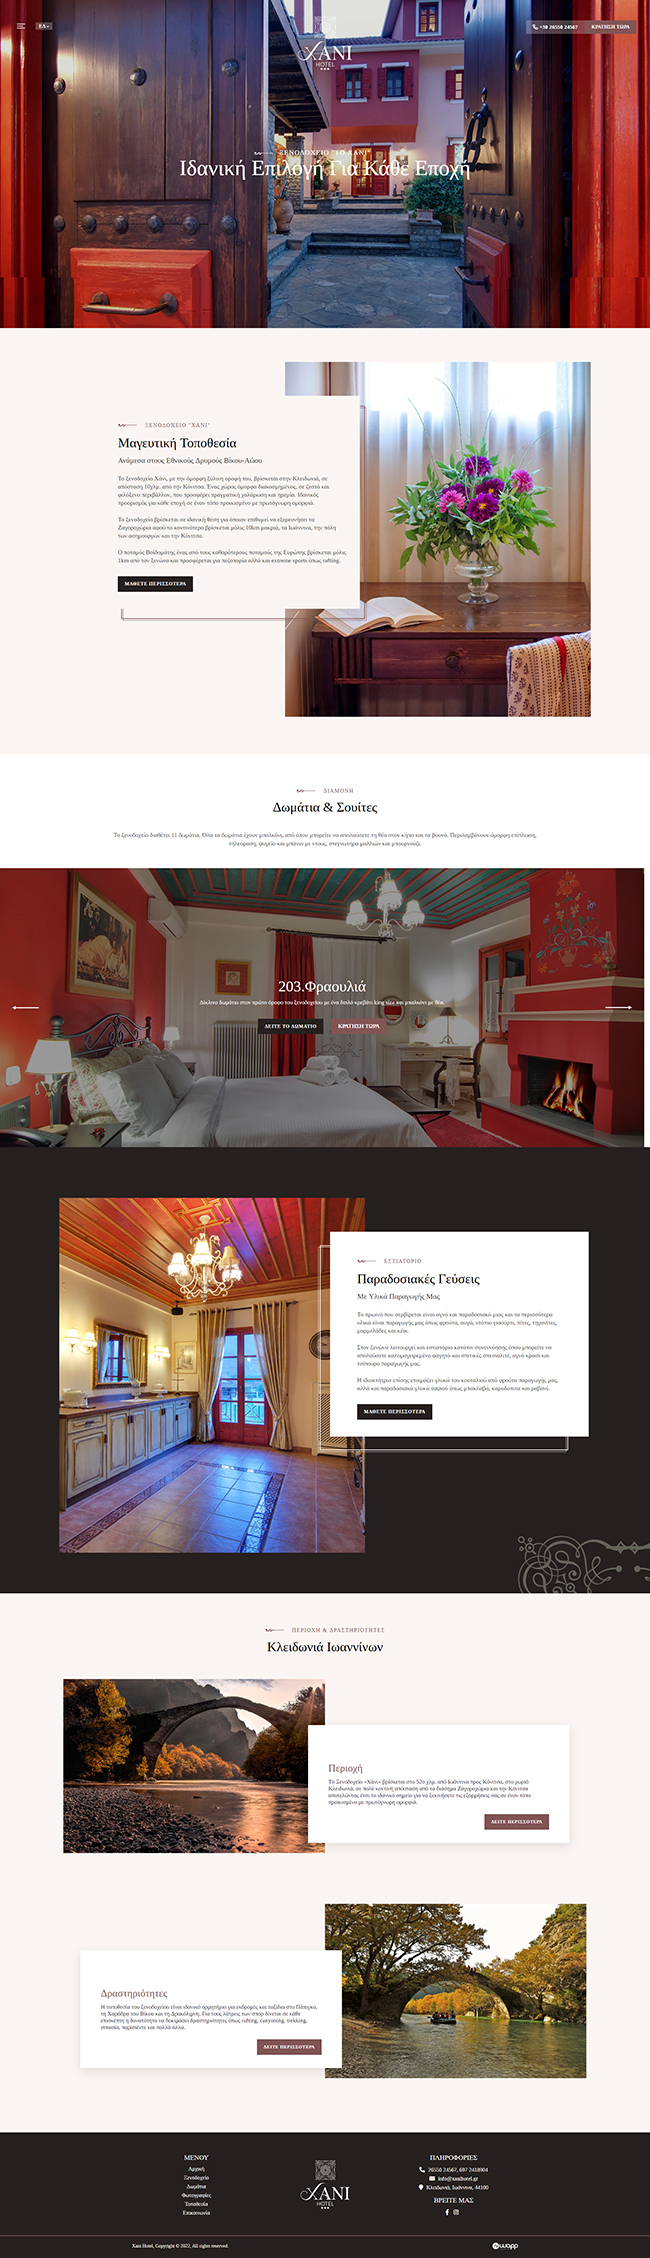 Κατασκευή responsive ιστοσελίδας για το Ξενοδοχείο Το Χάνι στην Κλειδωνιά, Κονίτσης.